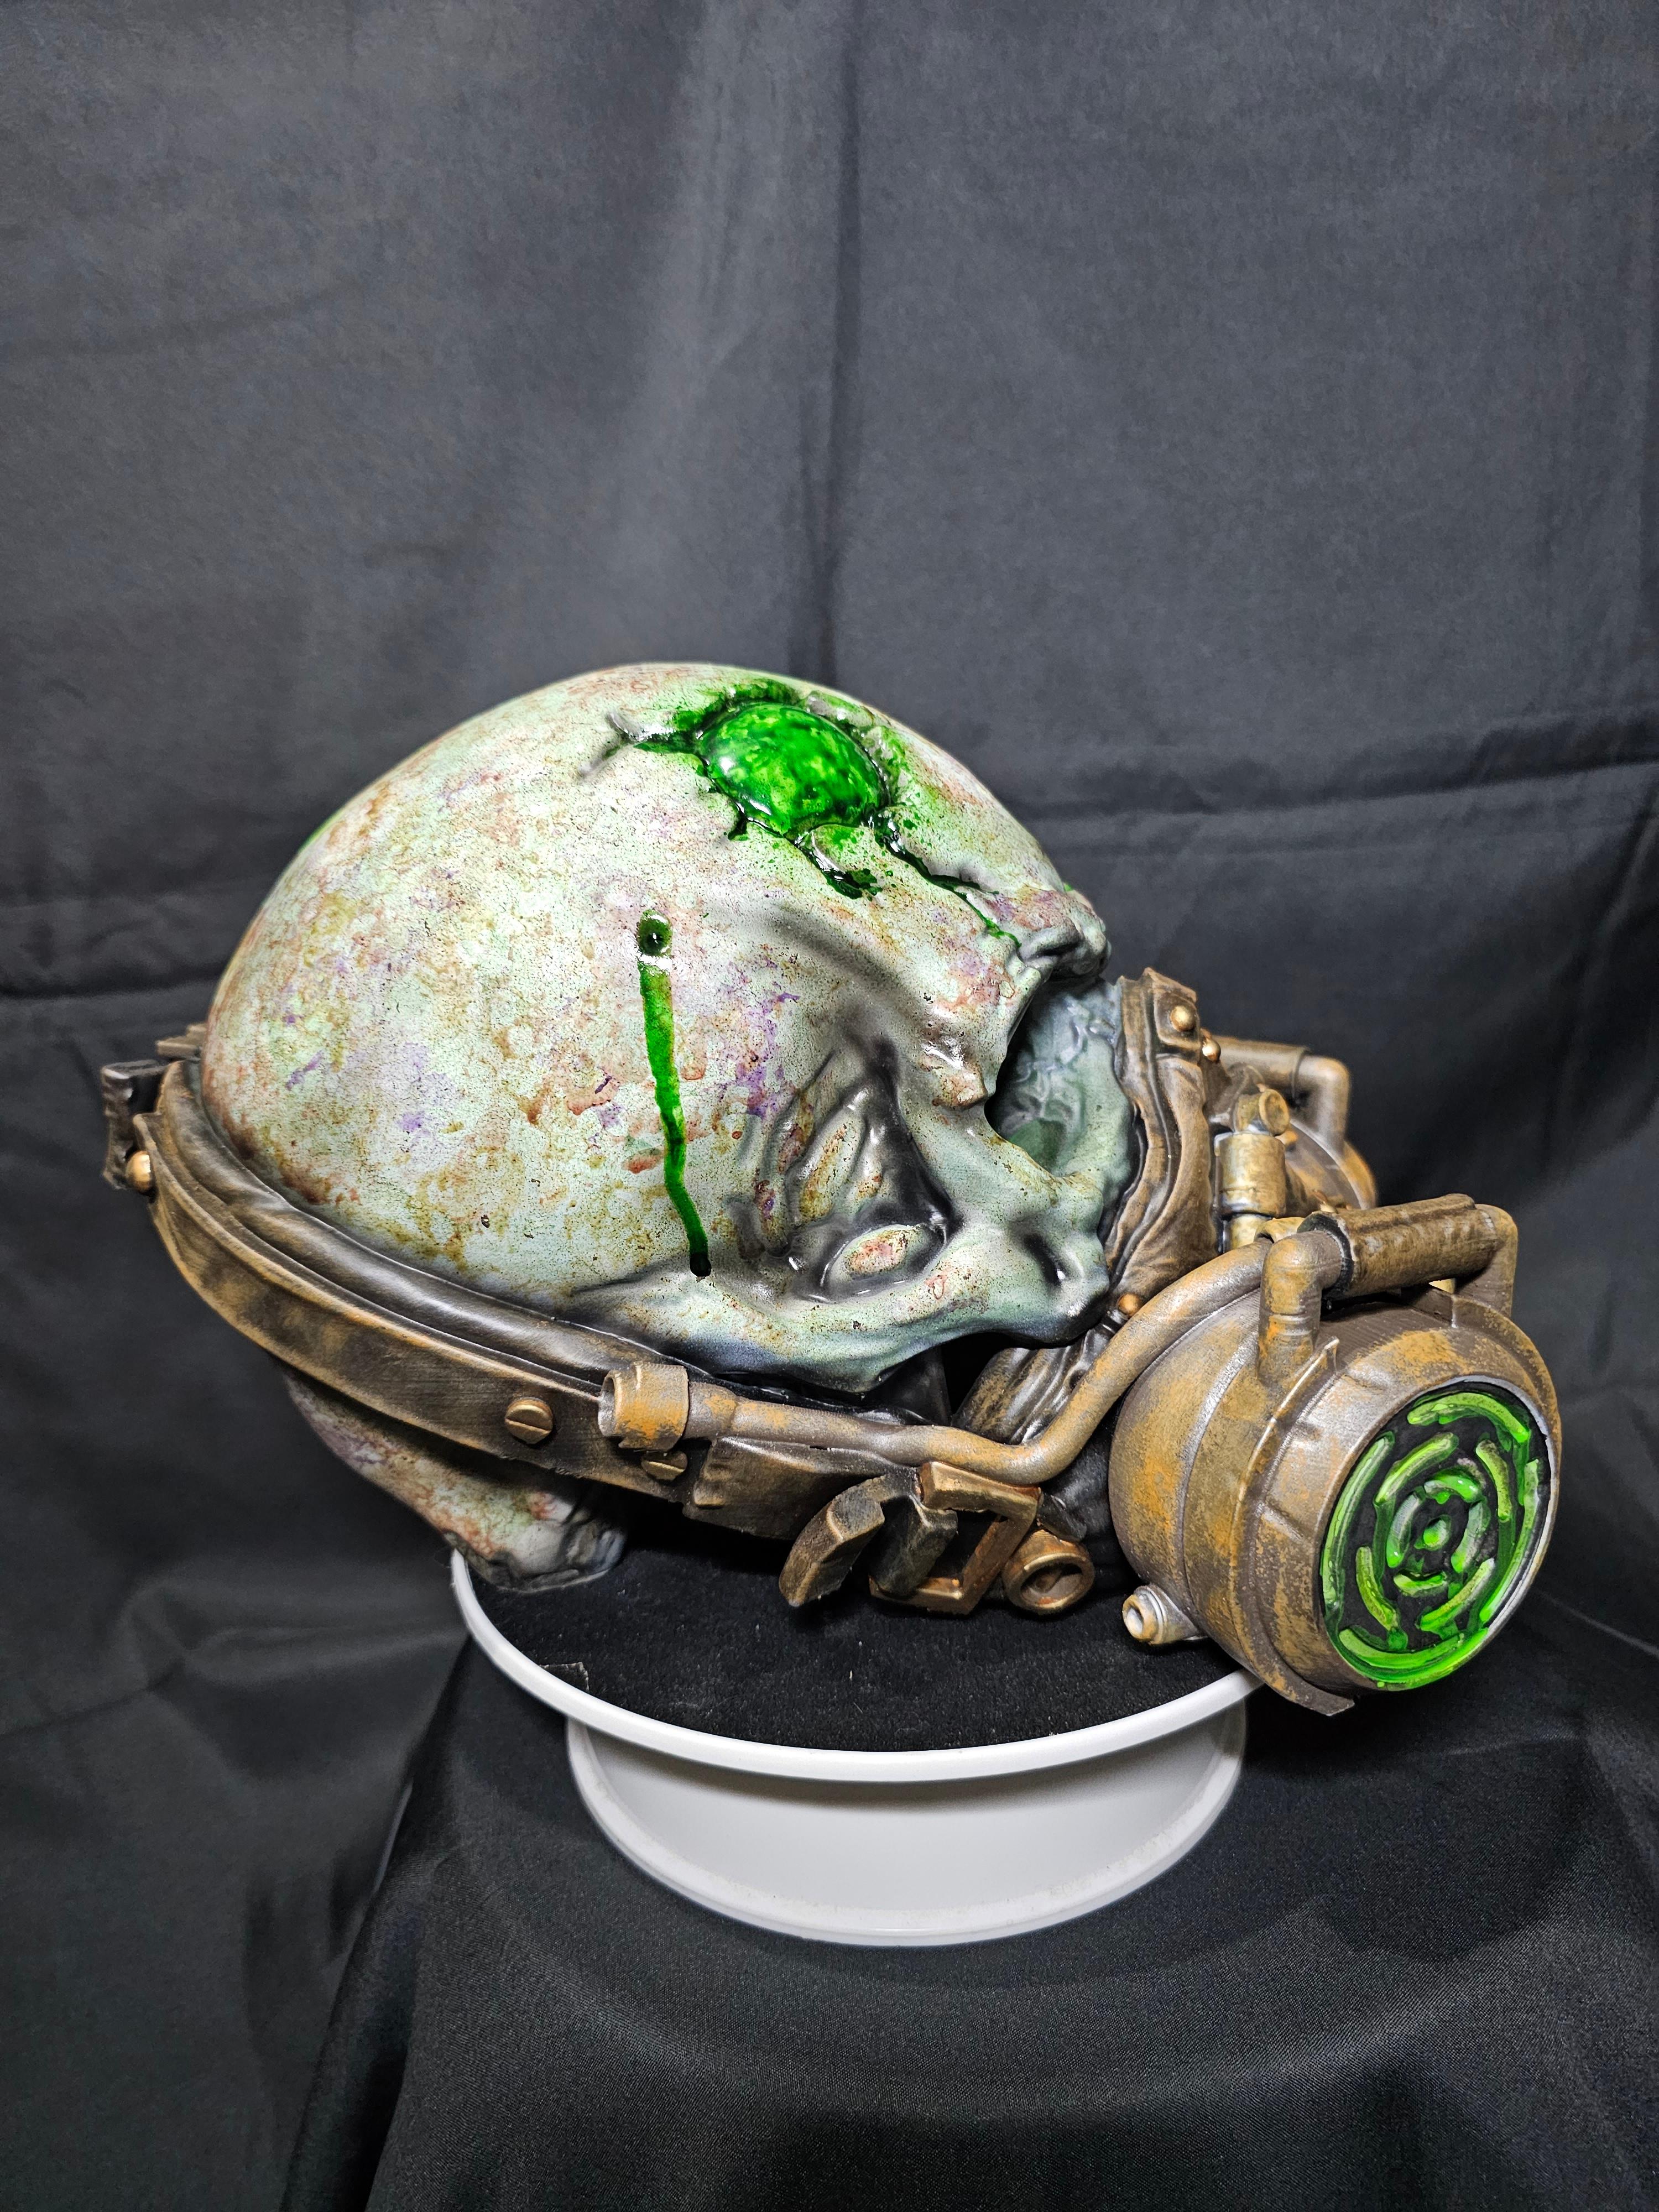 Masked Skull - Decoration 3d model